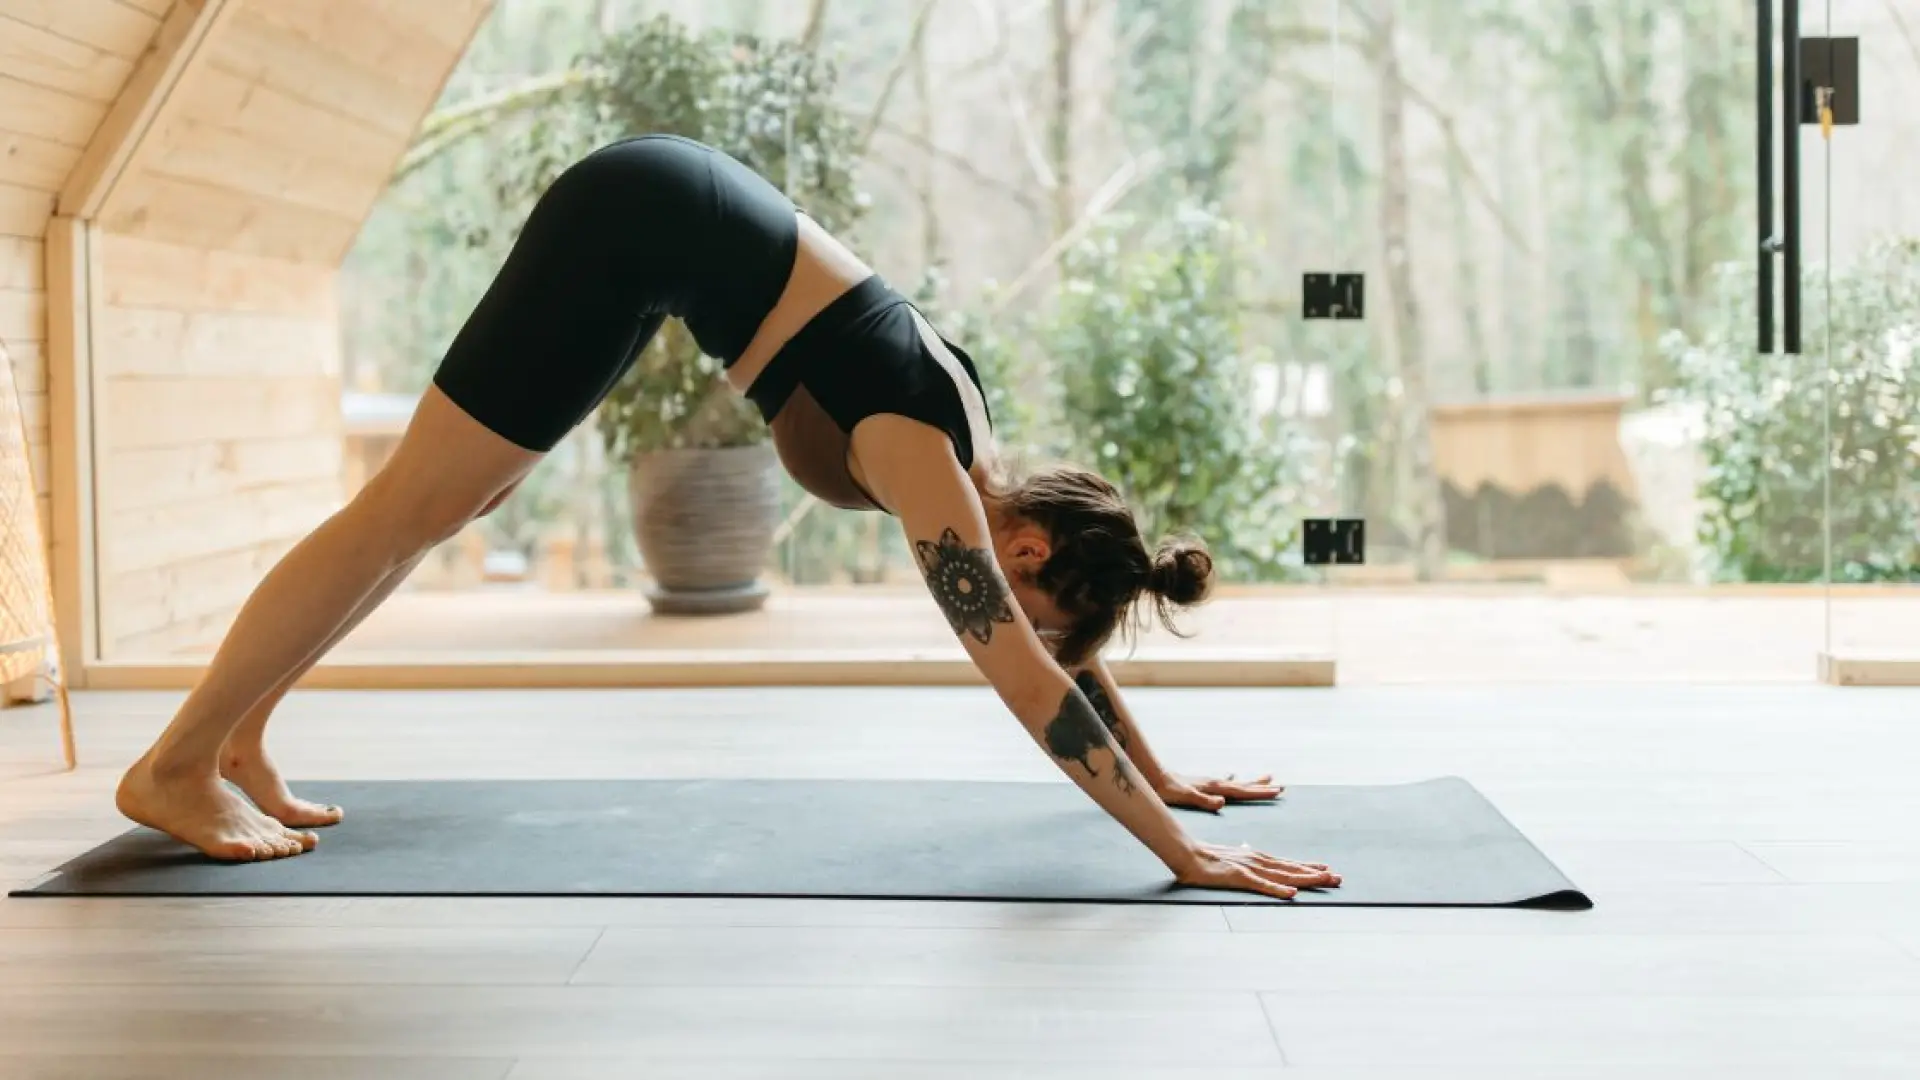 Mejora tu flexibilidad realizando estos ejercicios de pilates en